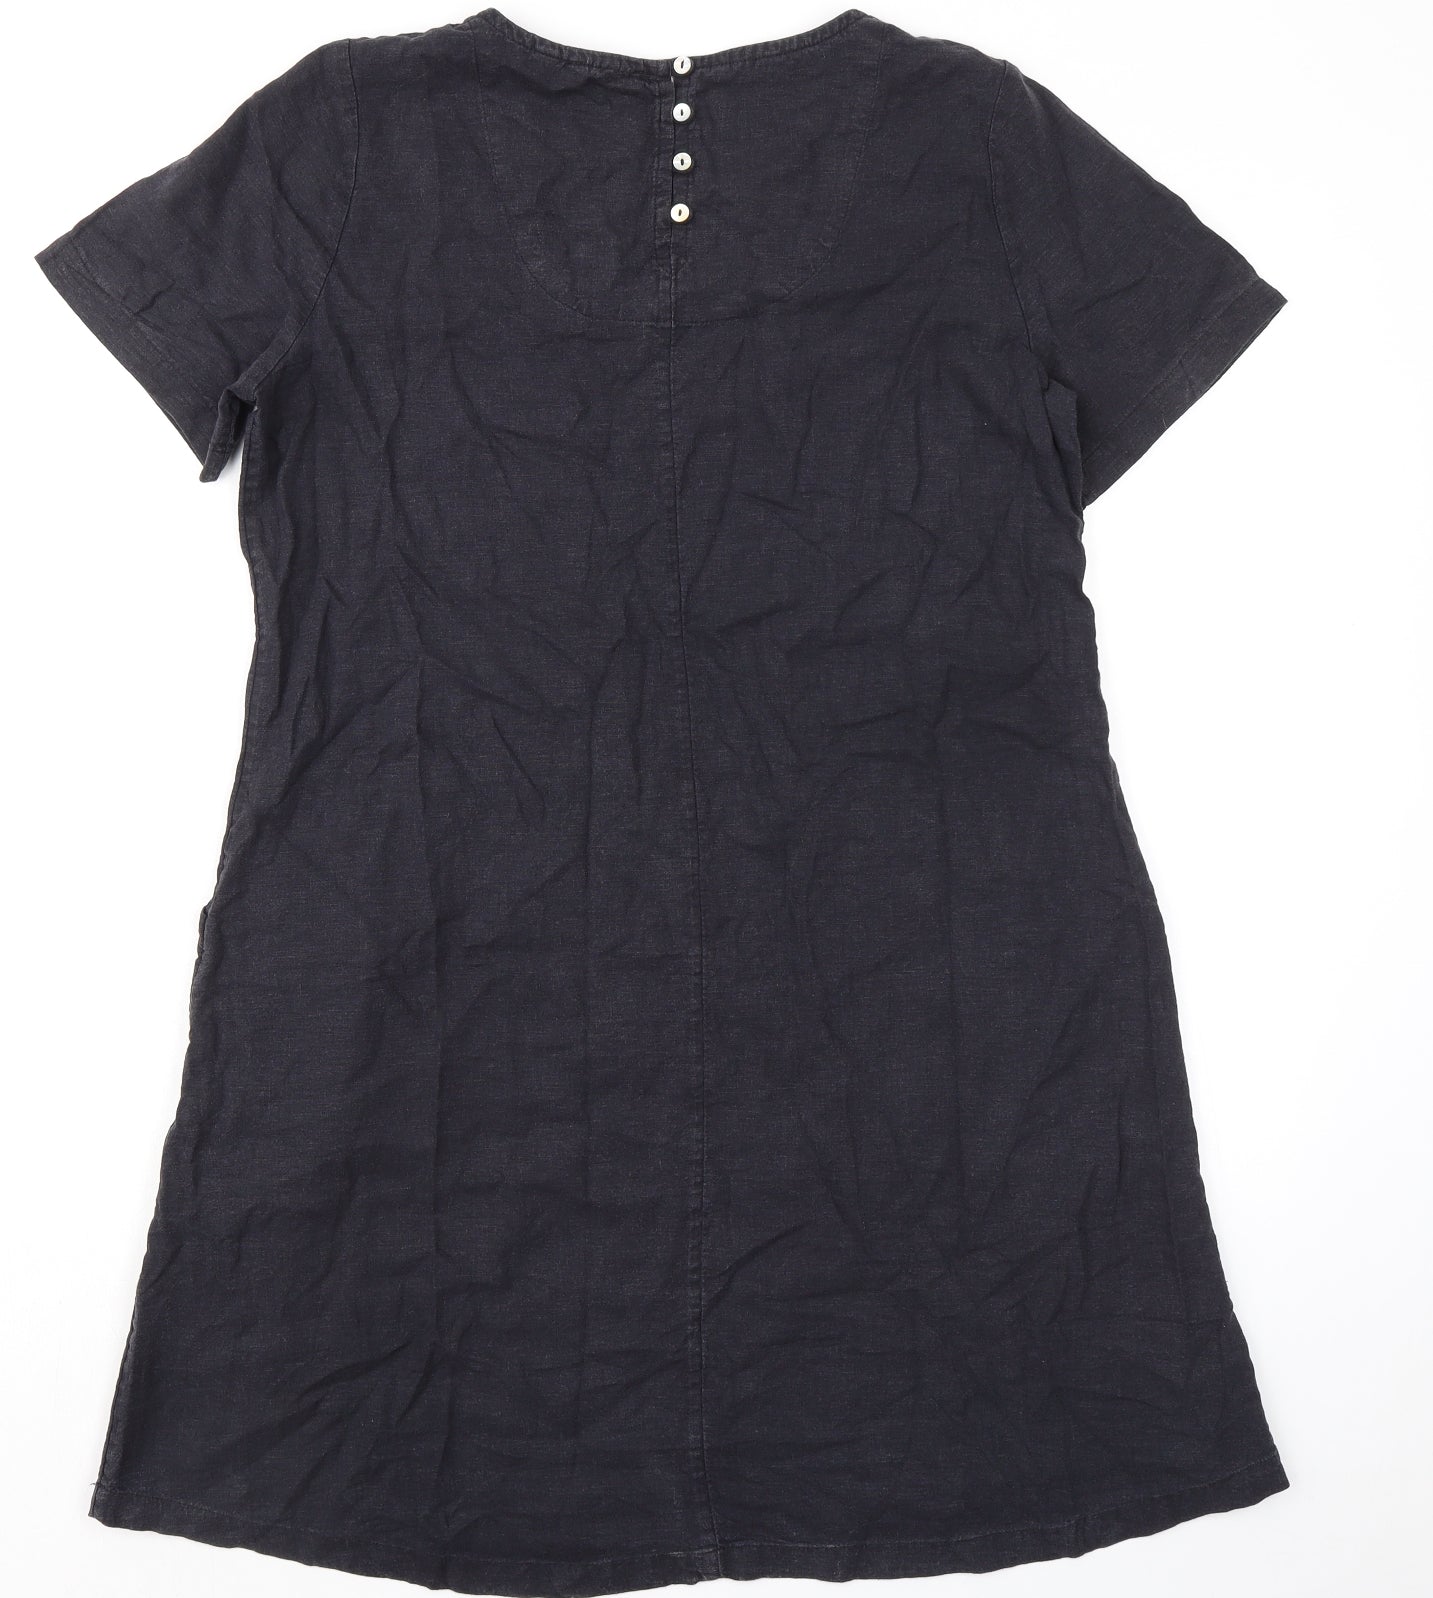 Fat Face Womens Black Linen Shirt Dress Size 12 Crew Neck Button